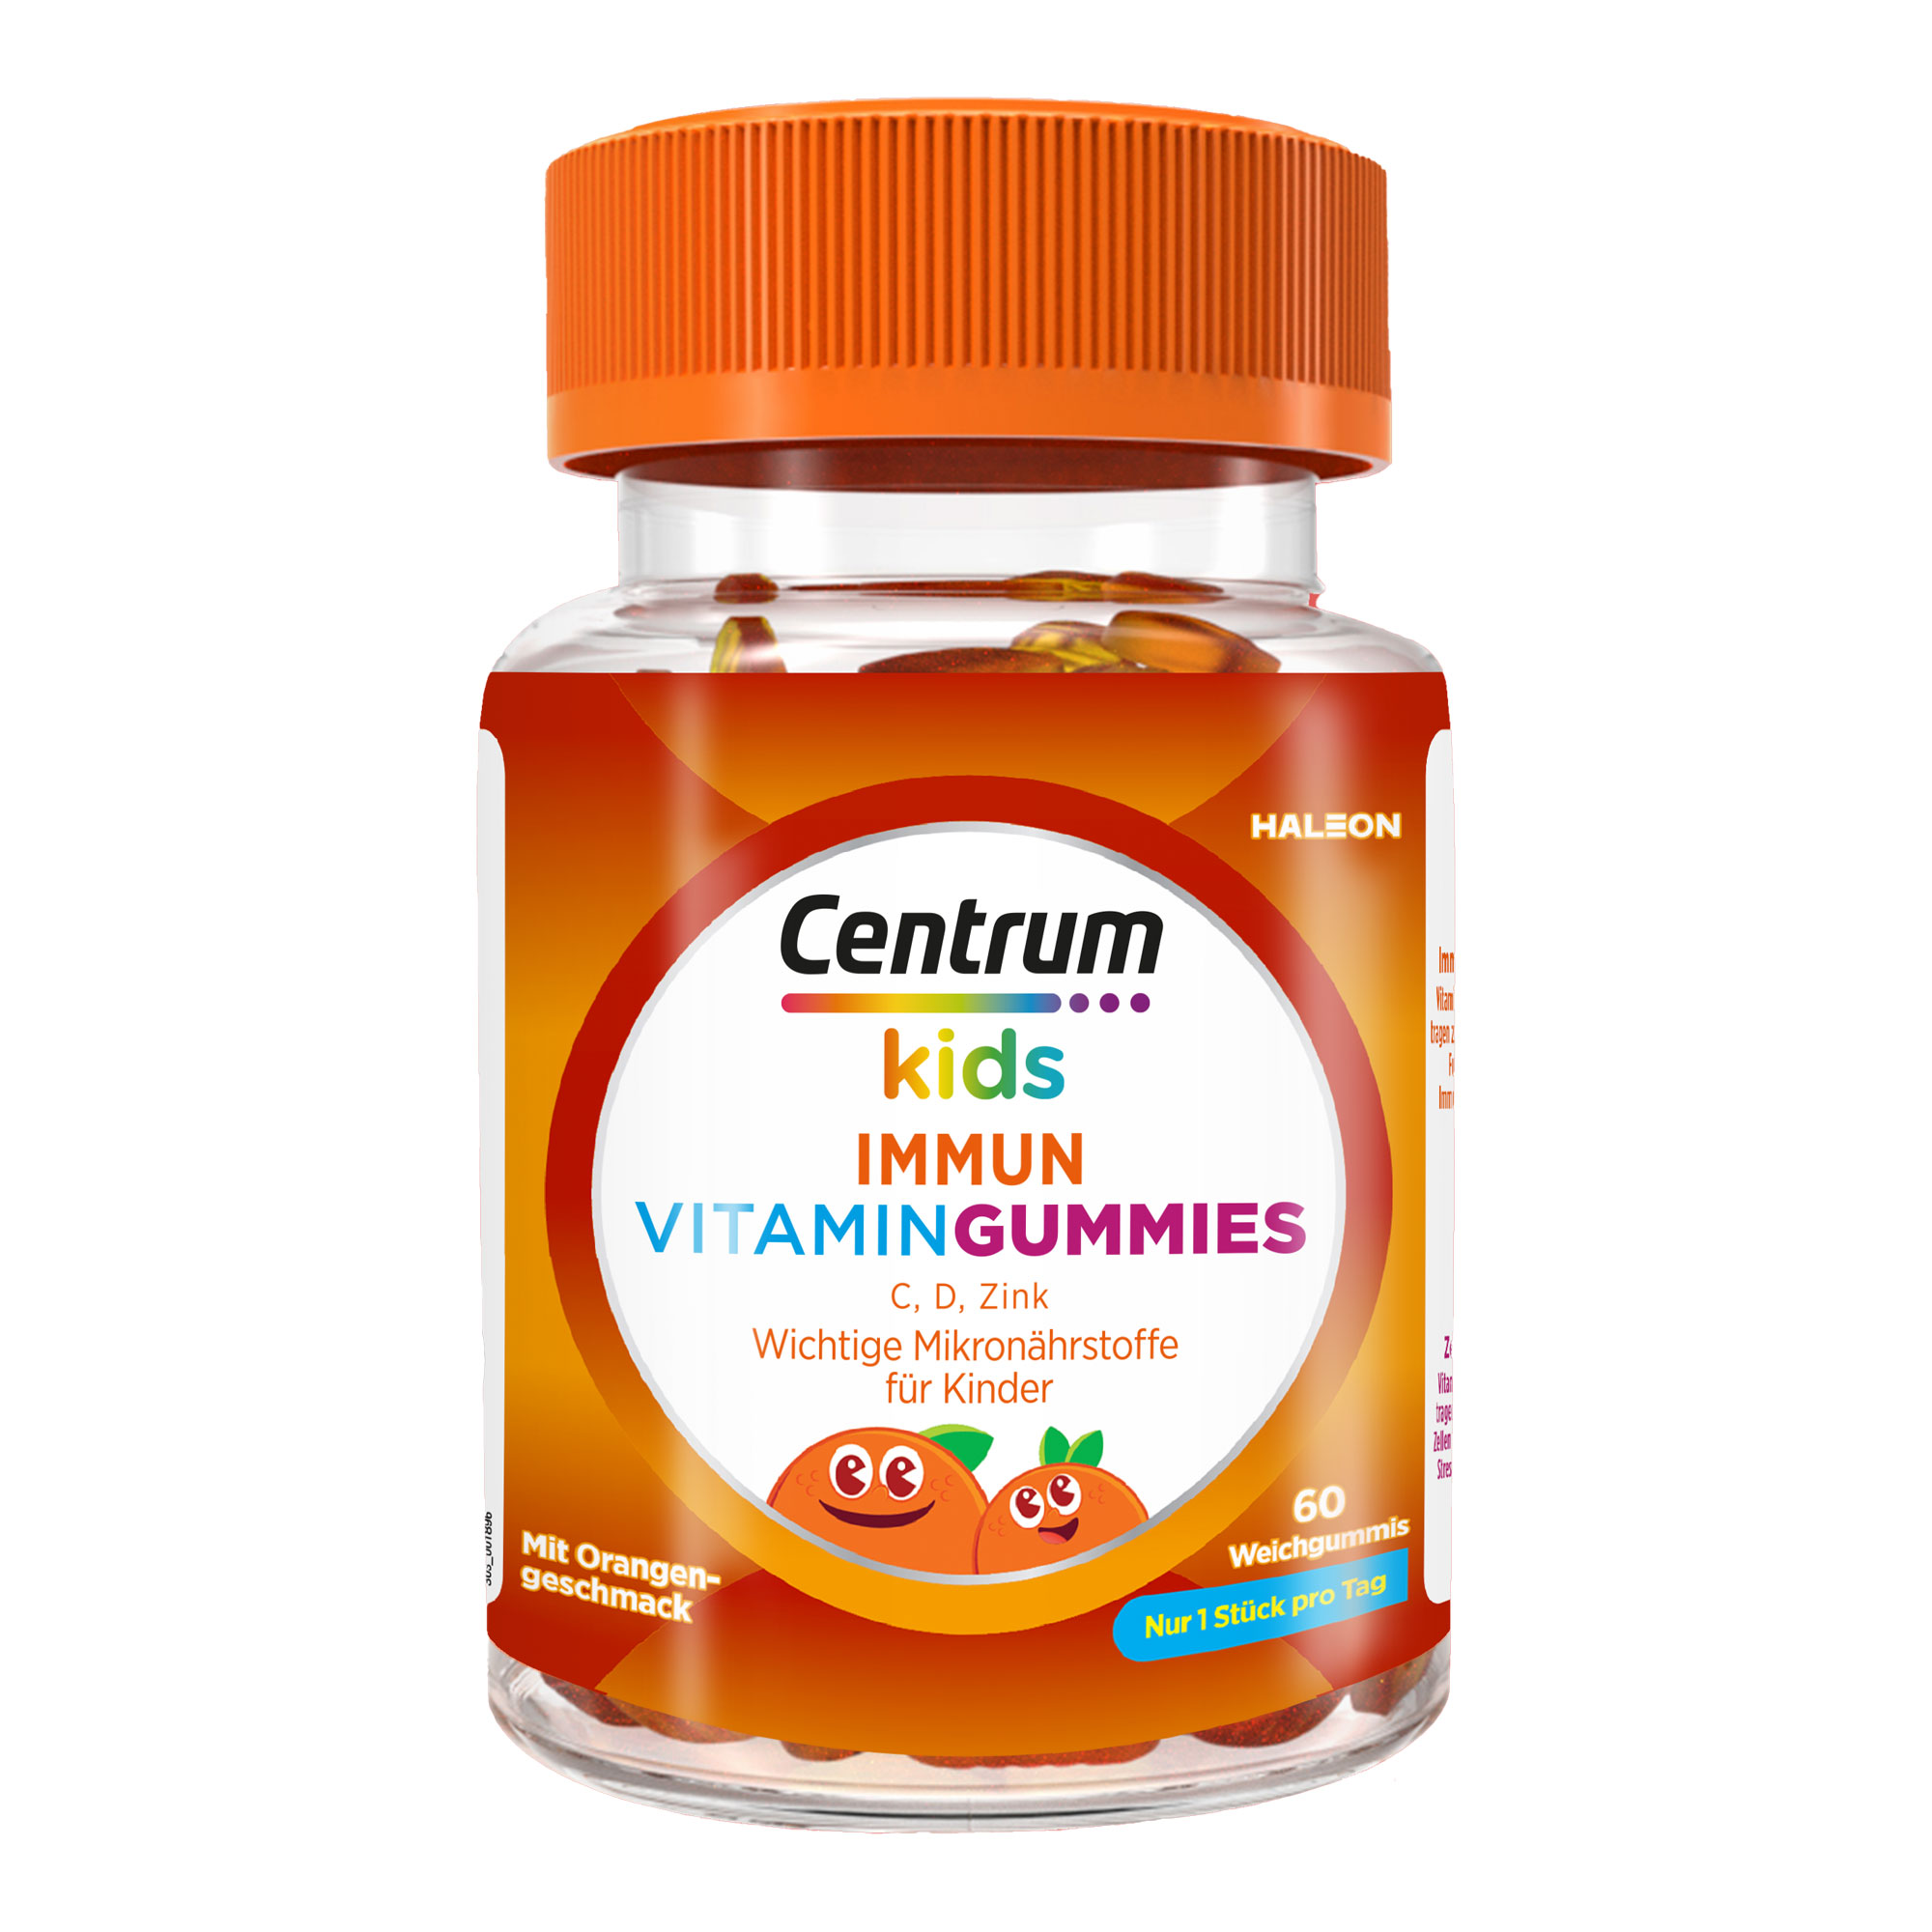 Nahrungsergänzungsmittel mit 4 Vitaminen und Zink in Form von Gummibärchen. Für Kinder ab 4 Jahren. Mit Orangengeschmack.